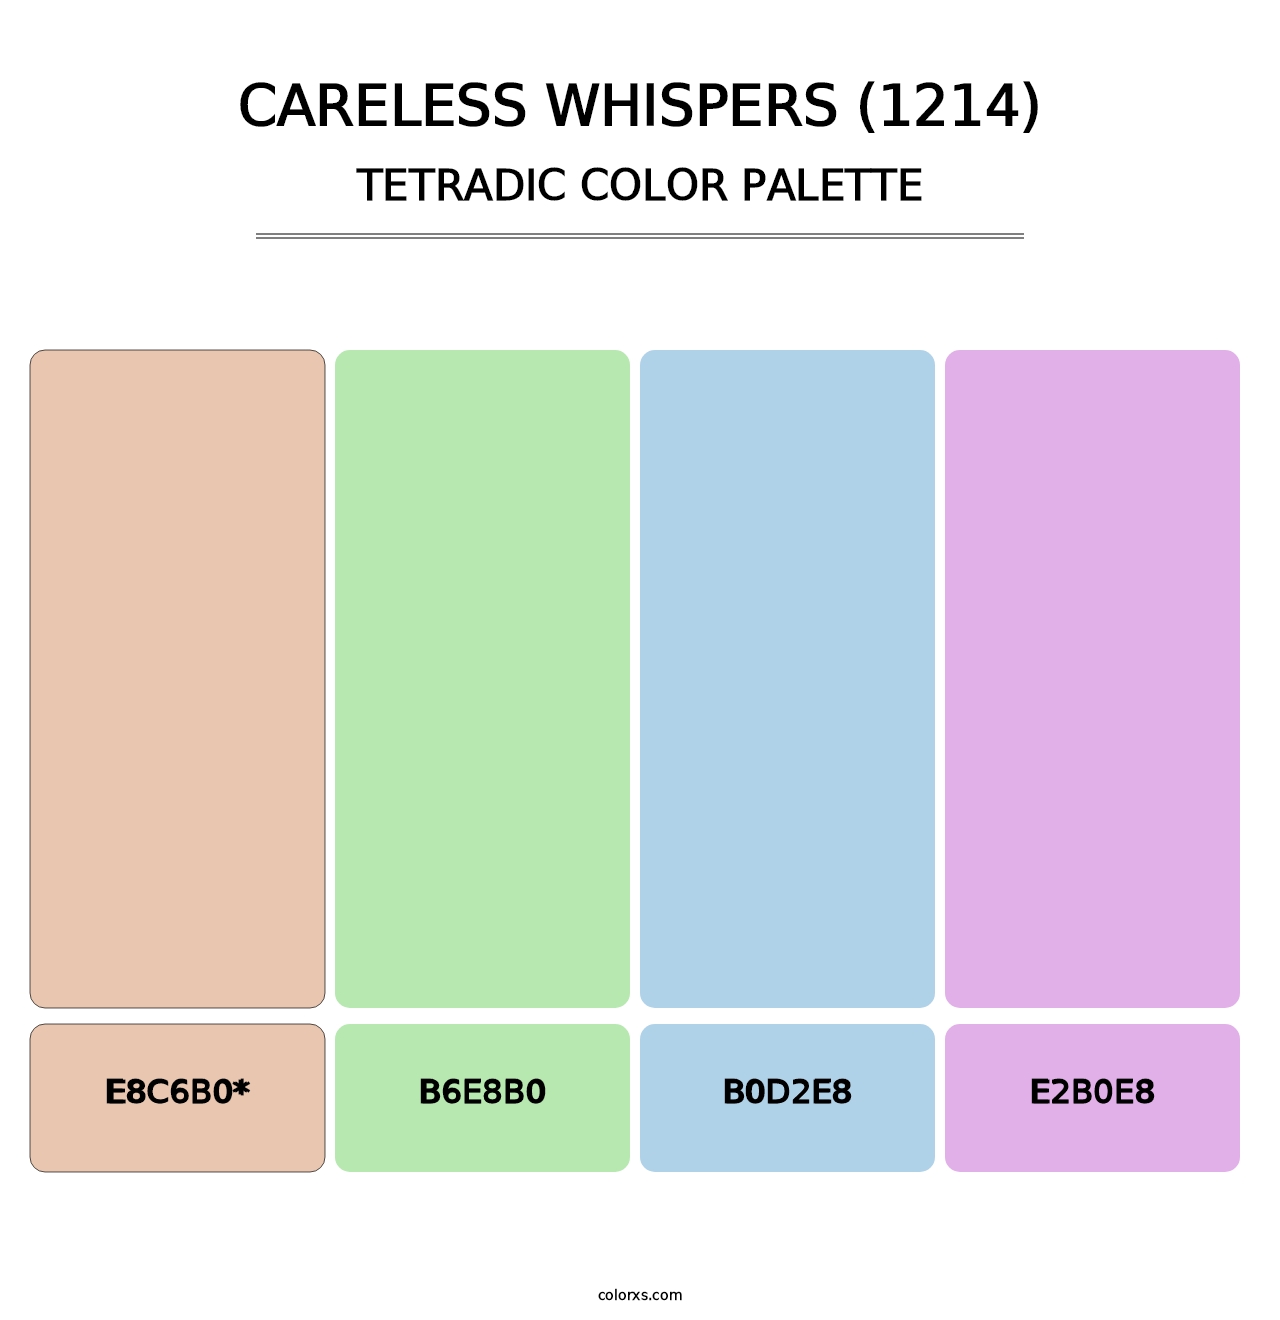 Careless Whispers (1214) - Tetradic Color Palette